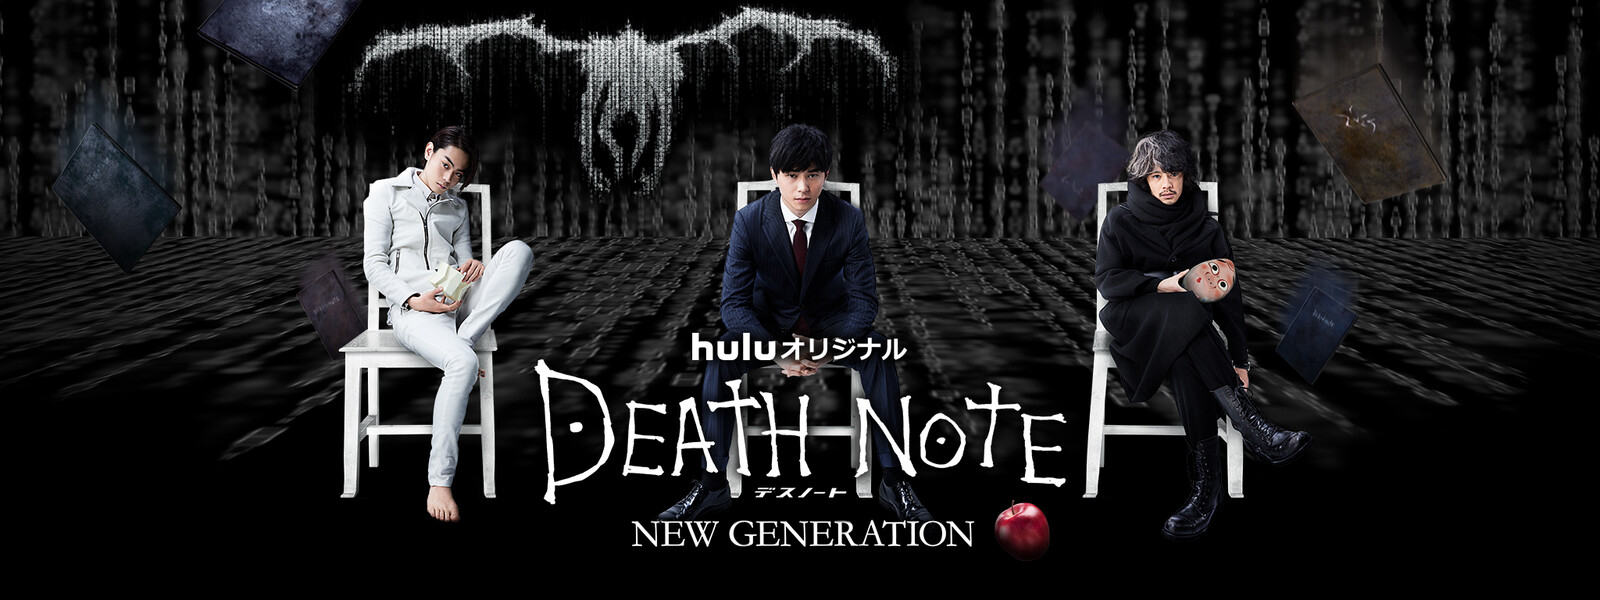 DEATH NOTE デスノート NEW GENERATIONの動画 - ドラマ DEATH NOTE デスノート